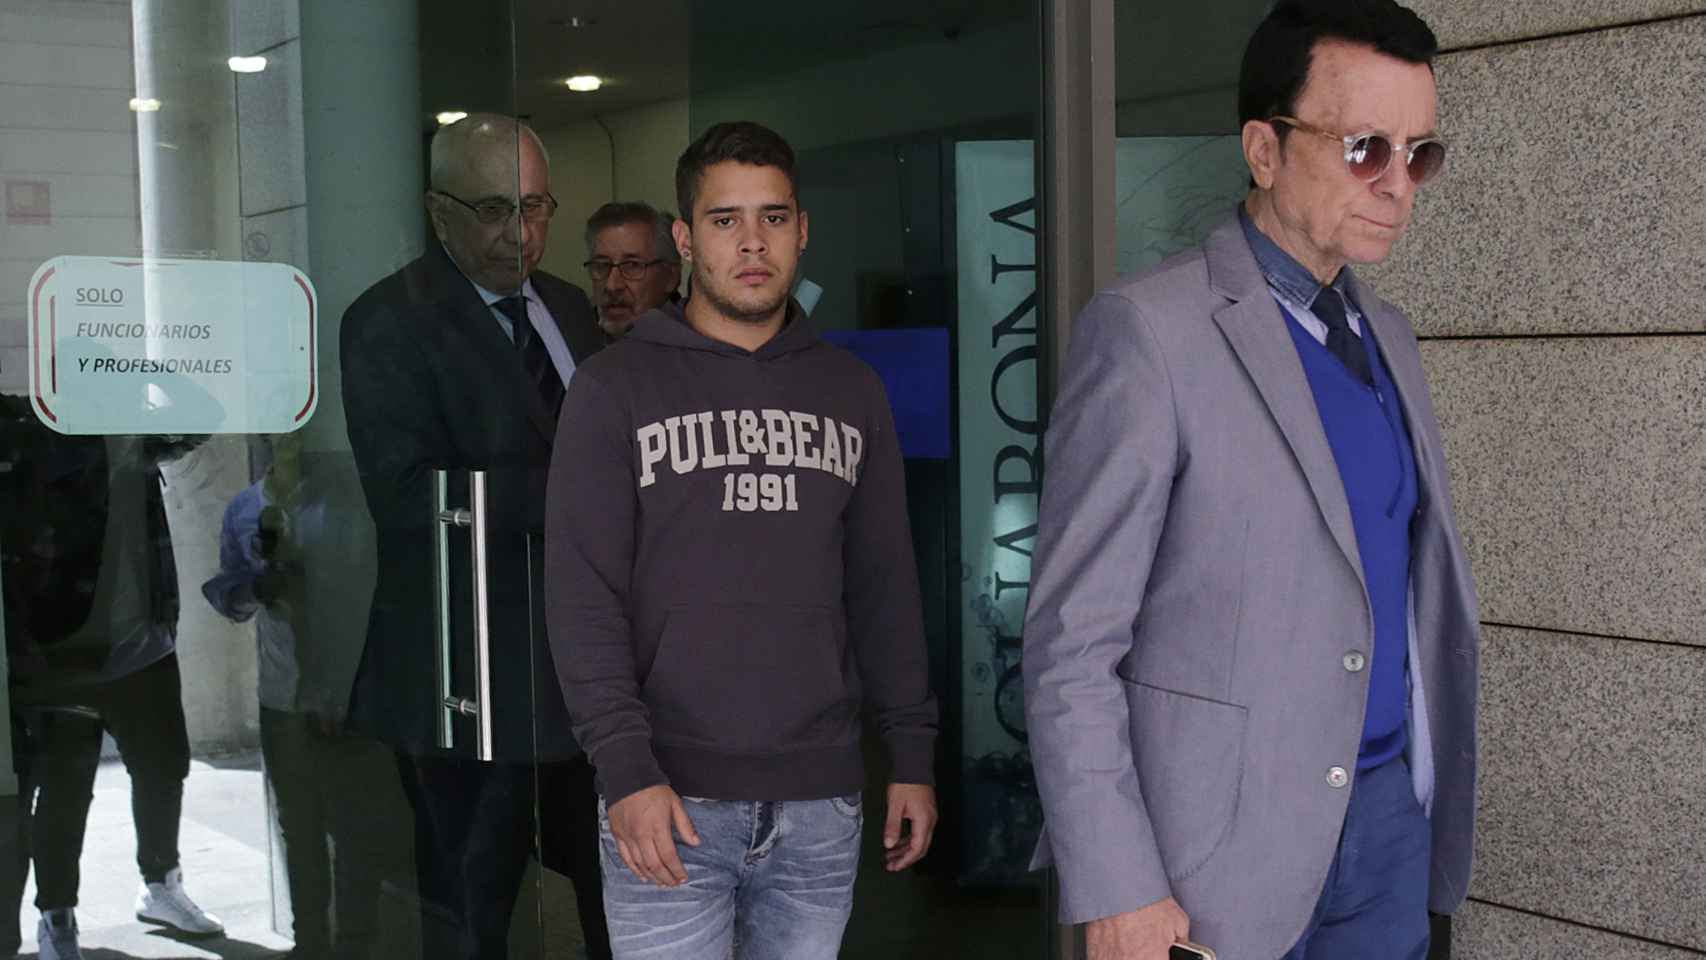 José Fernando junto a su padre, saliendo del juicio por agredir a un policía en Madrid hace una semana.